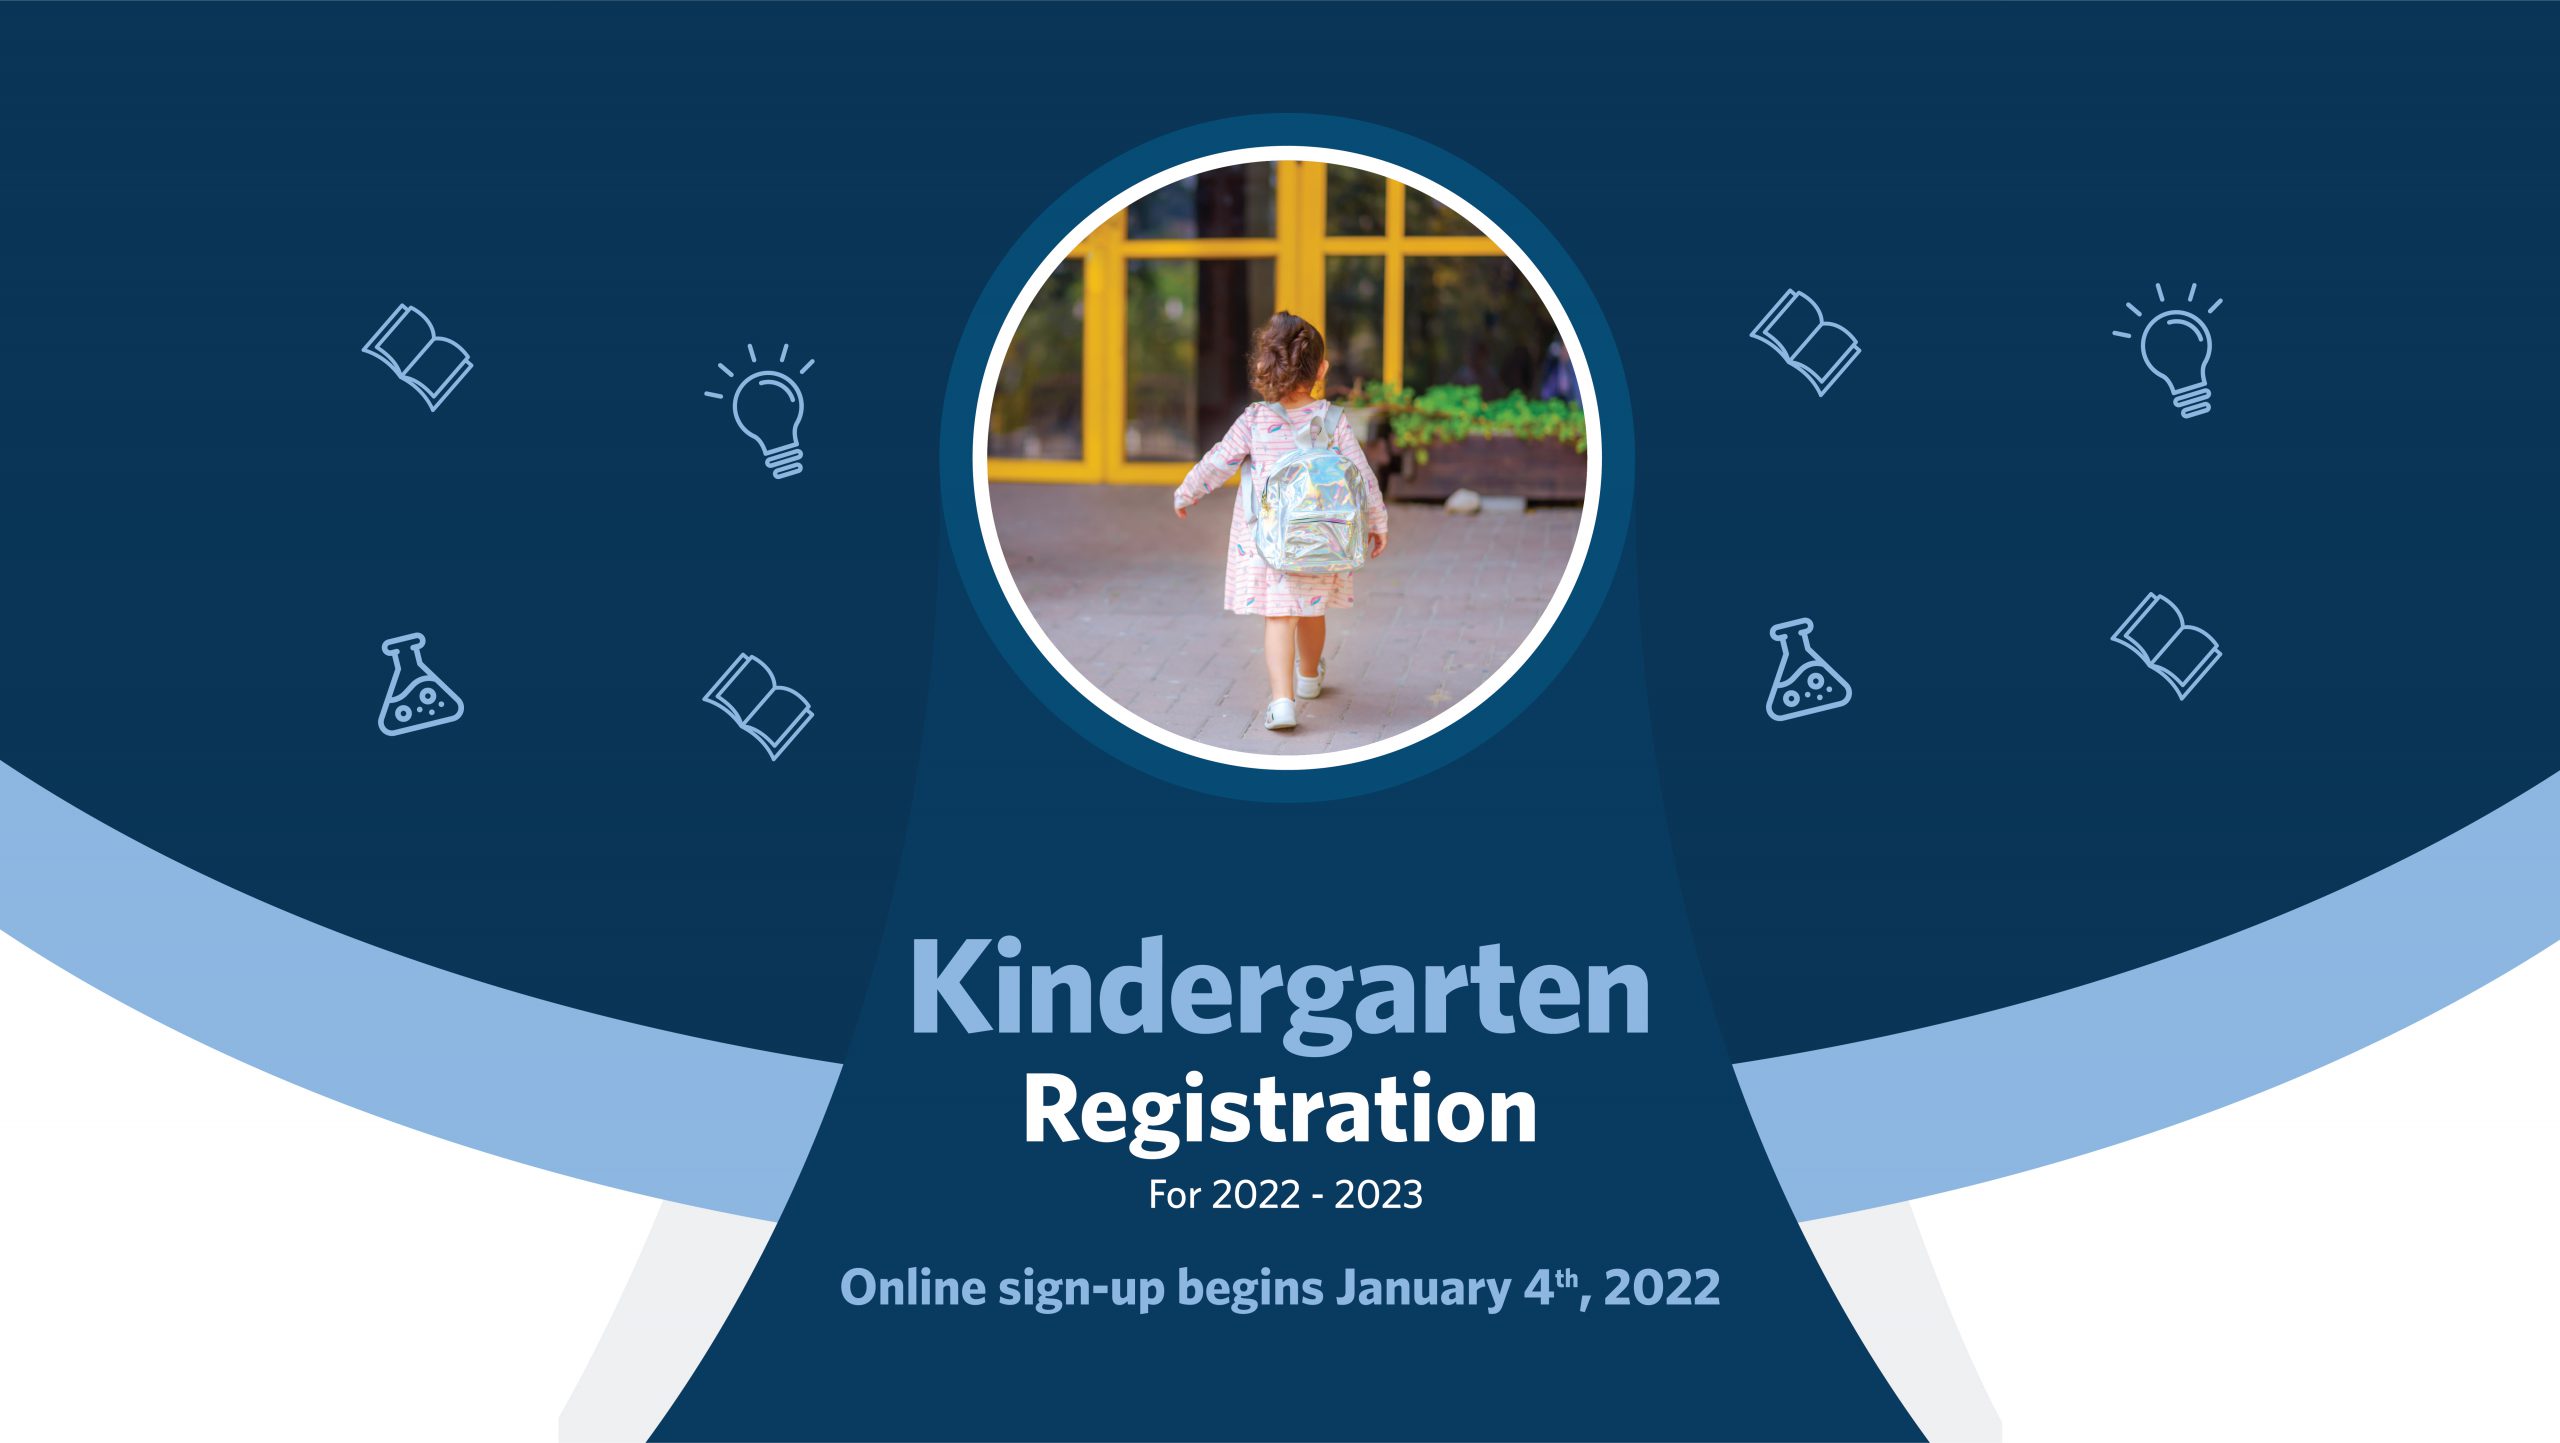 Online enrolment in kindergarten